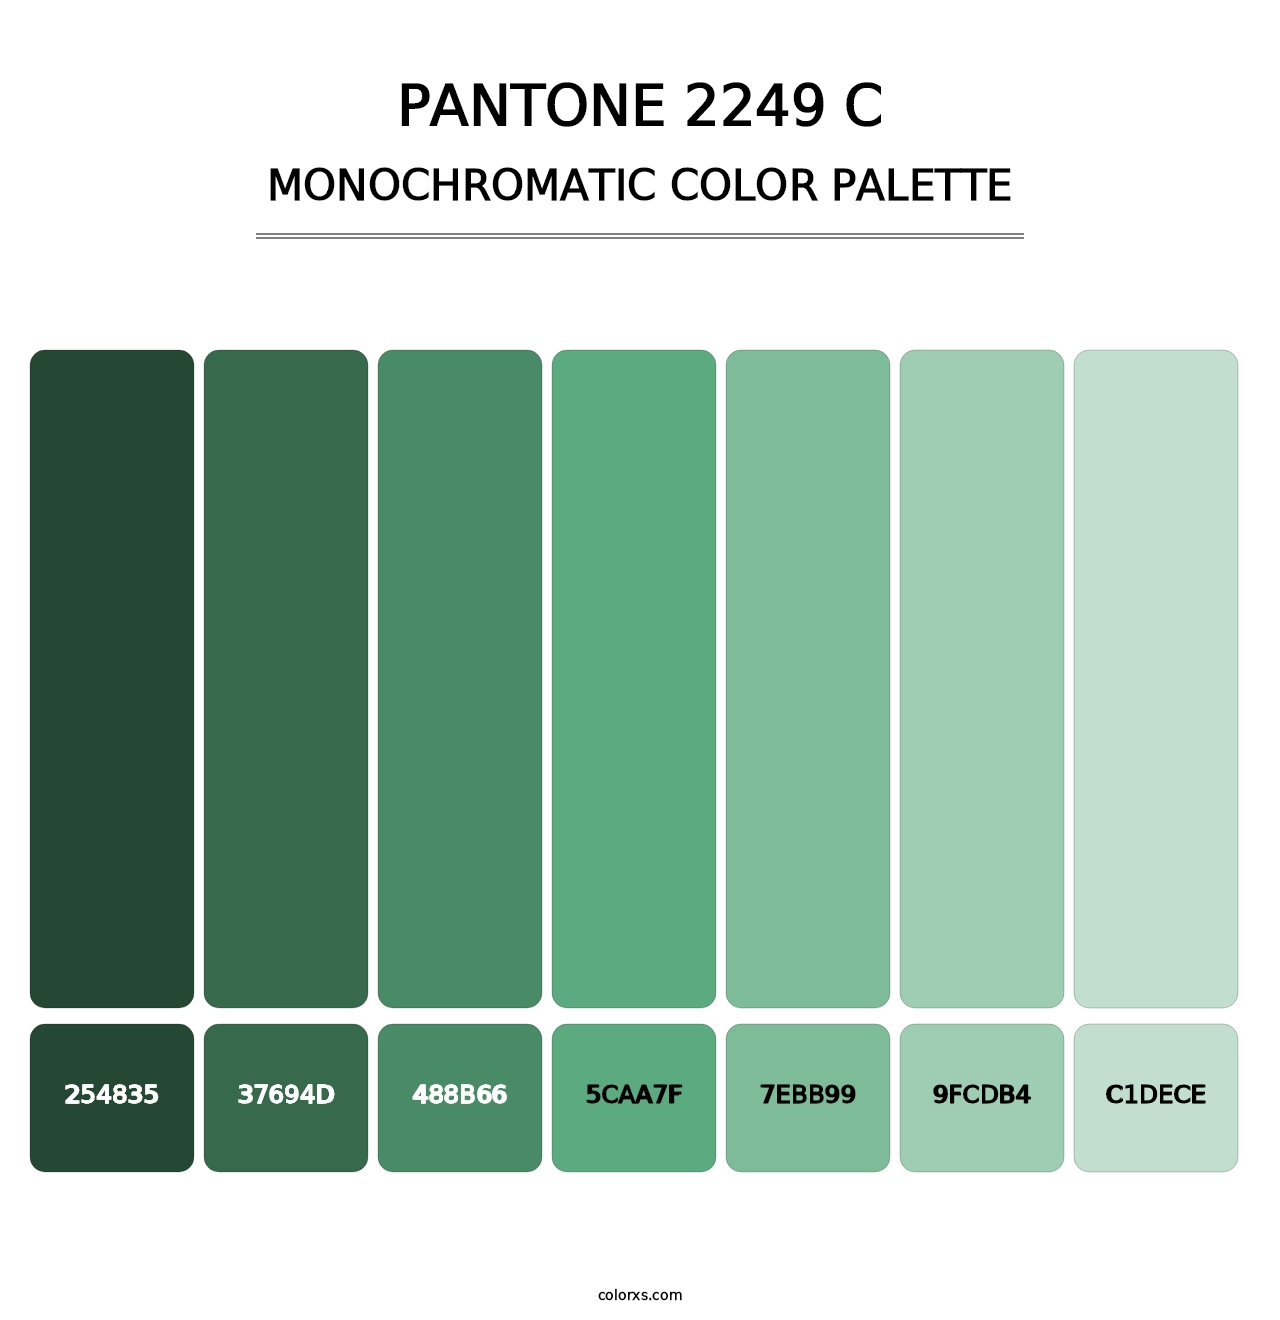 PANTONE 2249 C - Monochromatic Color Palette